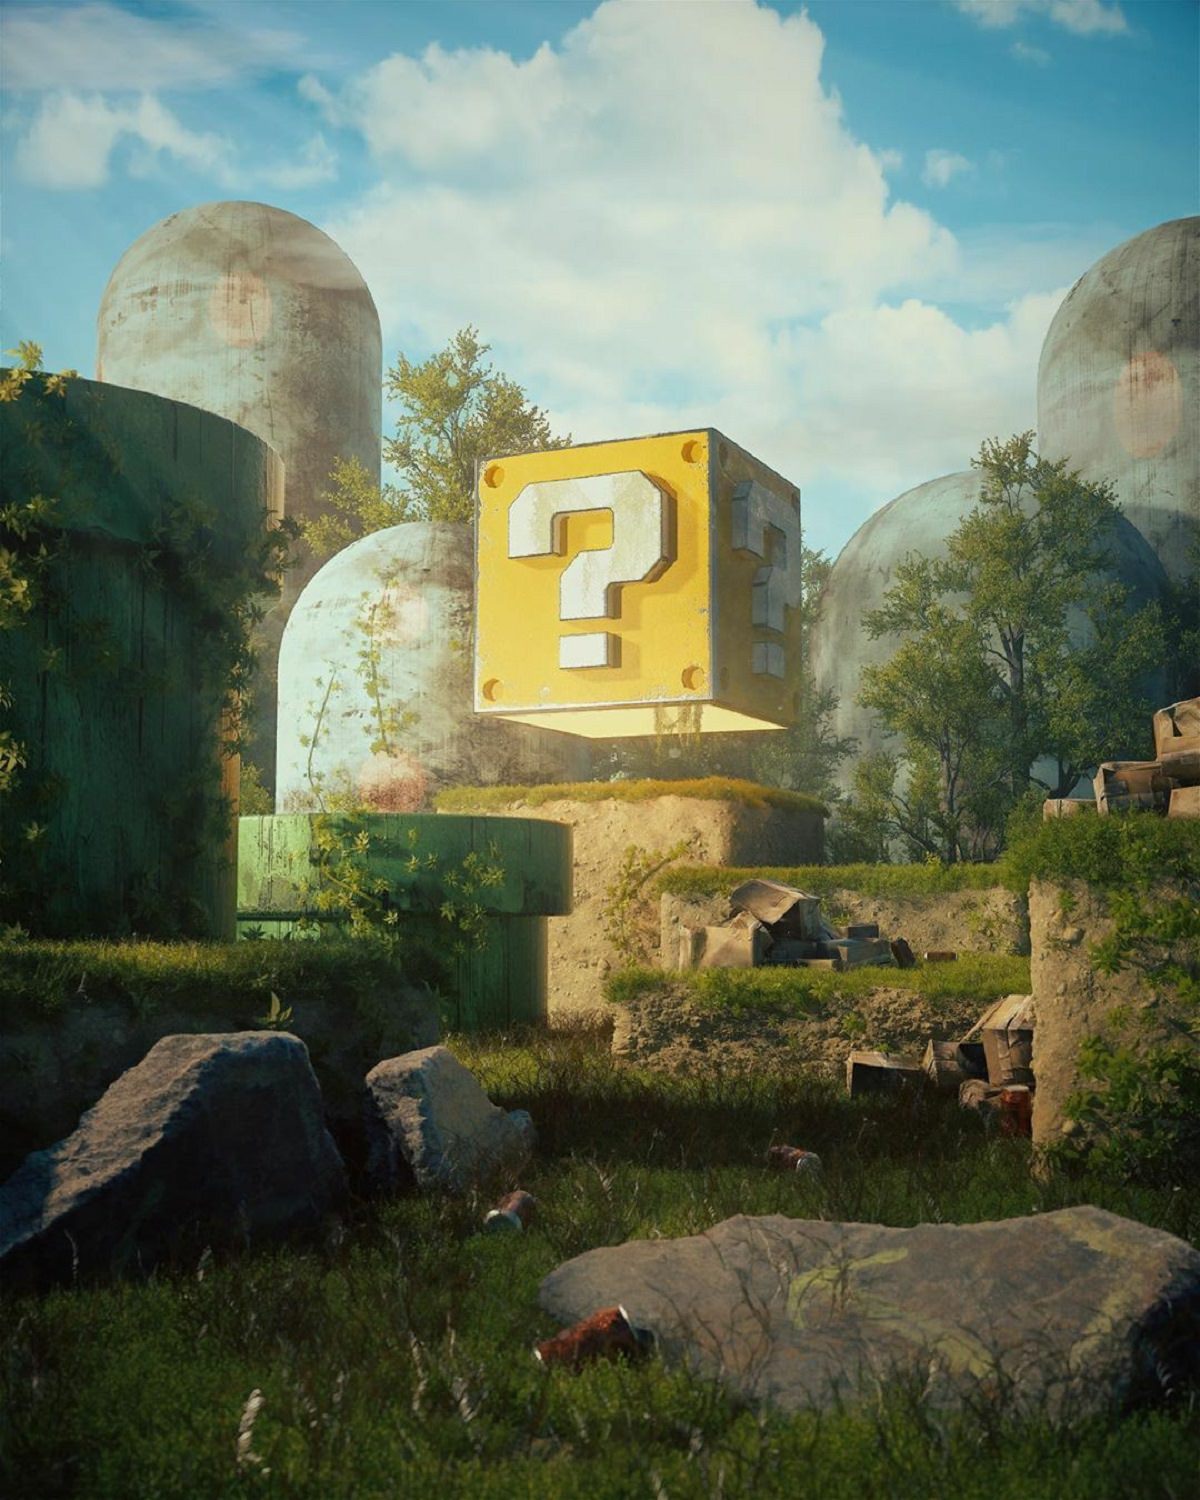 بلوک علامت سوال در بازی ماریو نینتندو در محیط باز و چمنزار